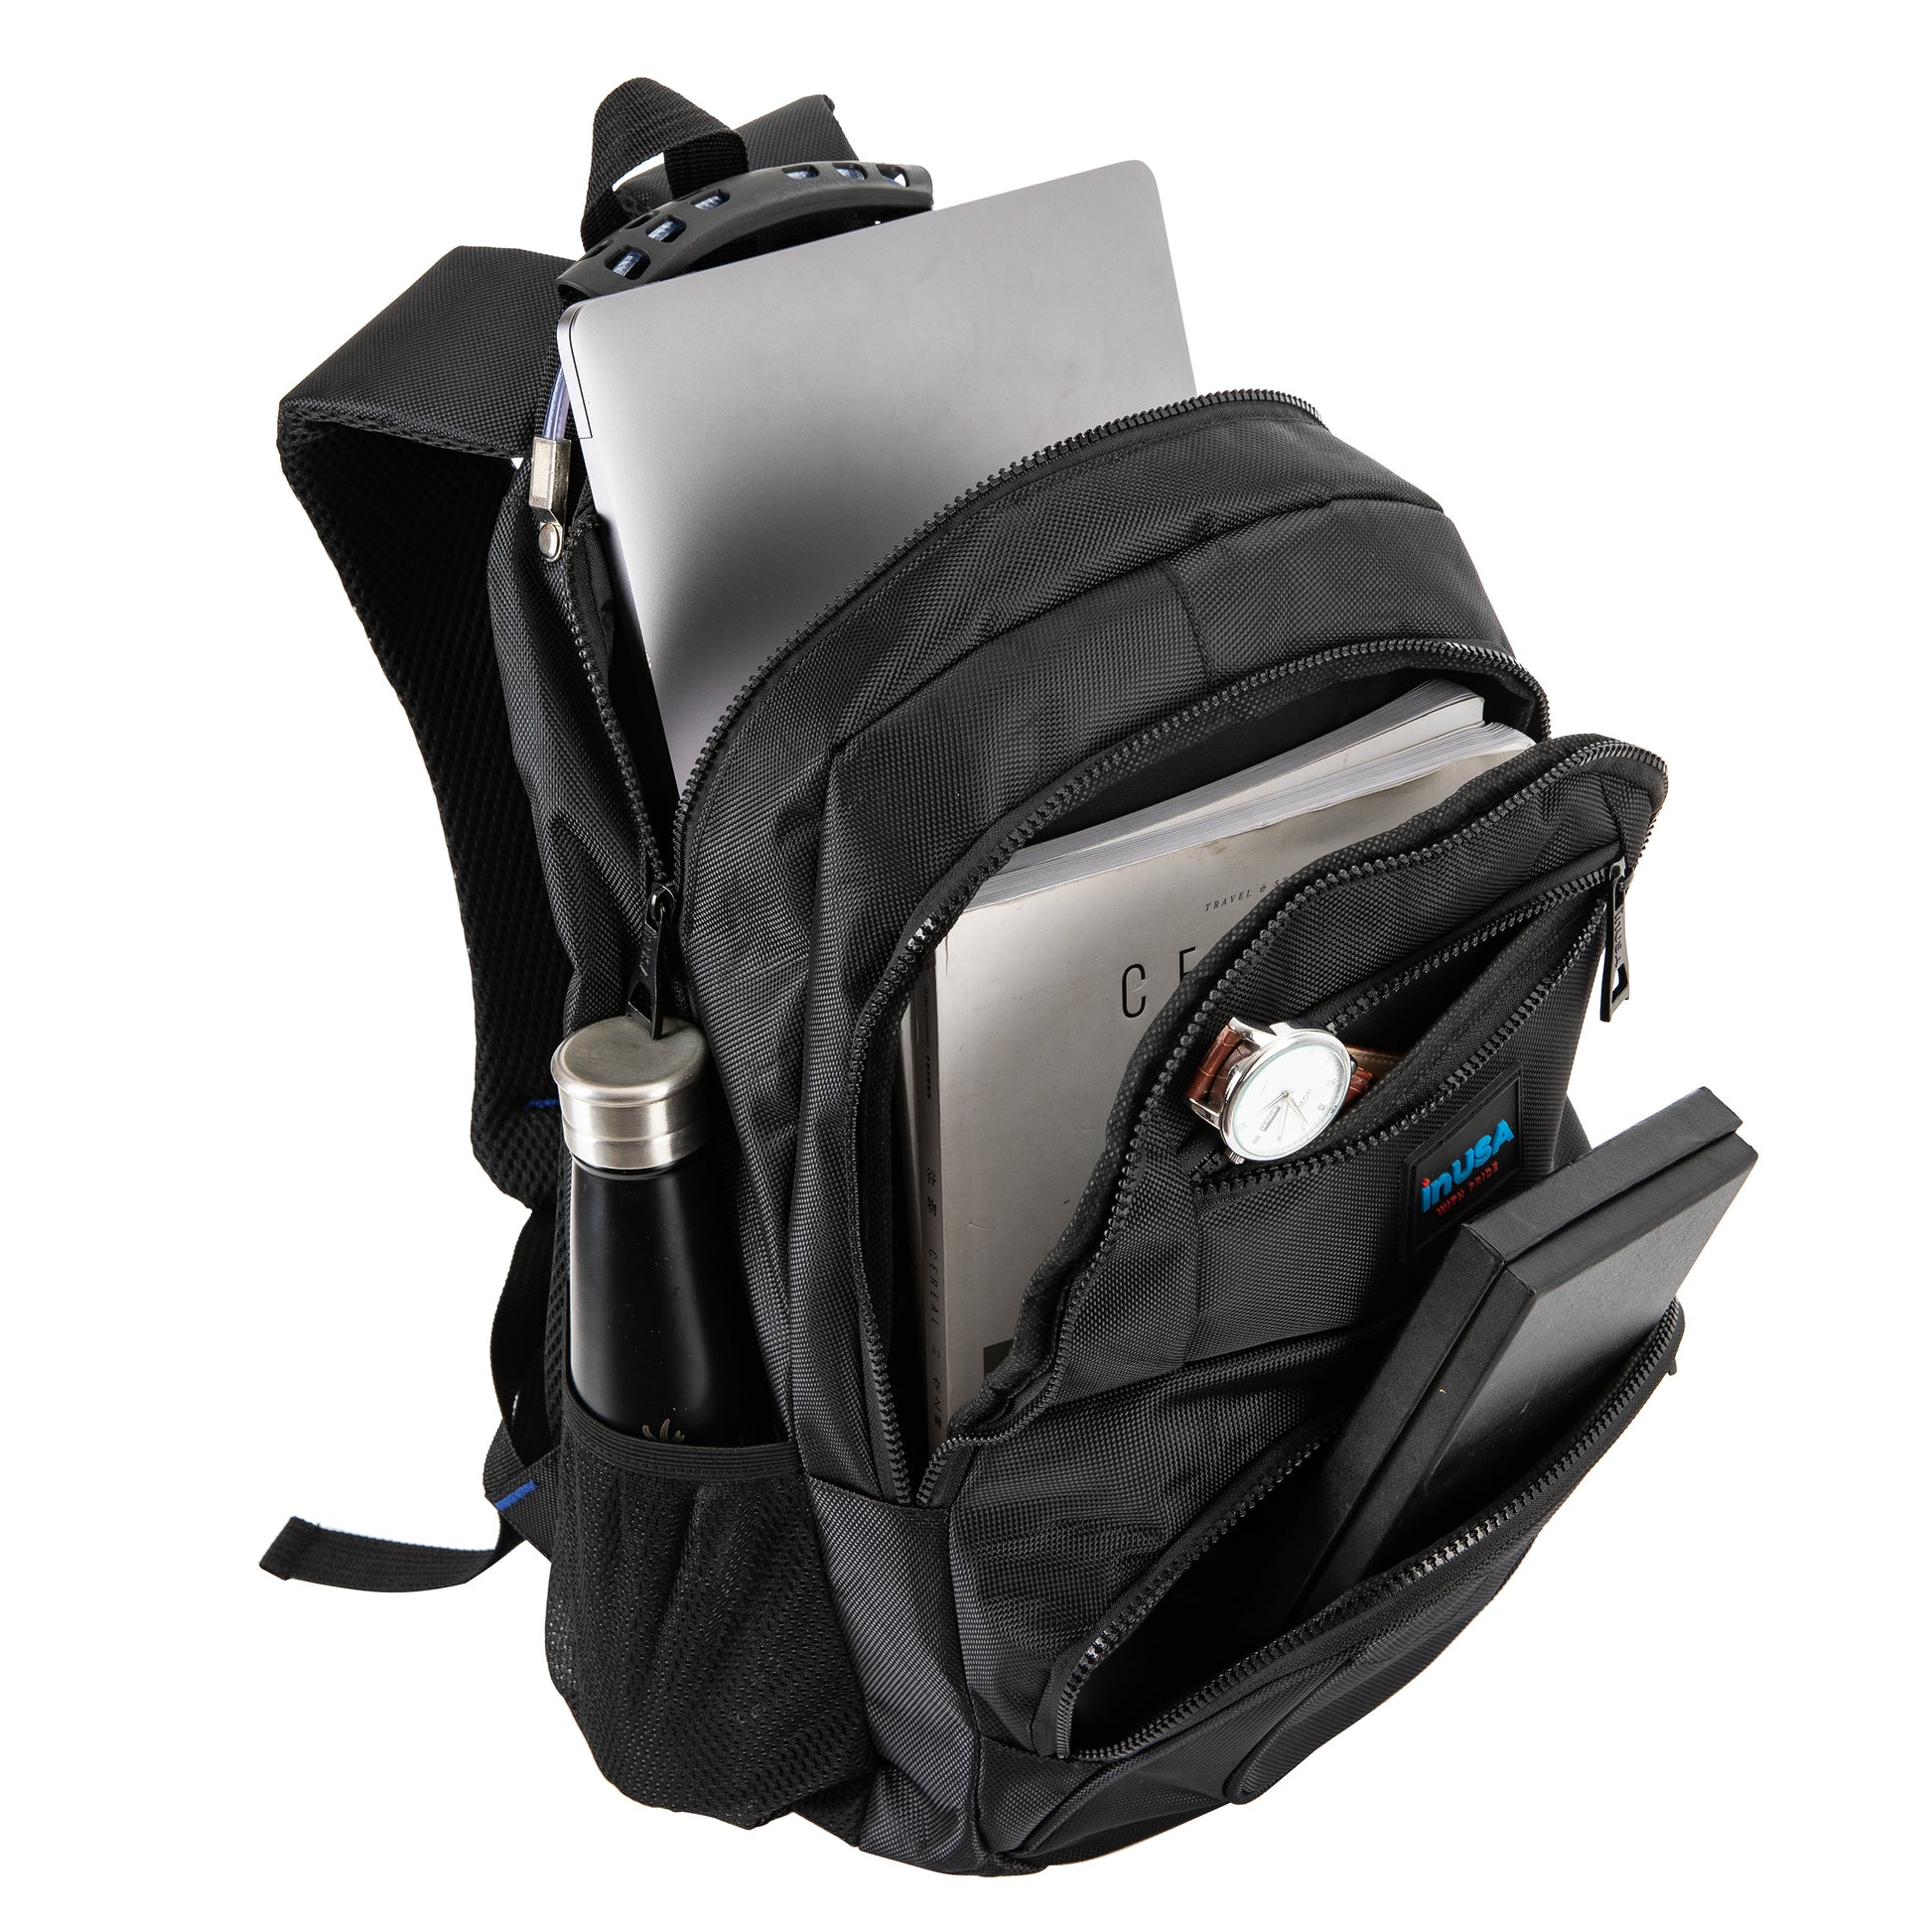 CRANDON Executive 15.6-Inch Laptop Backpac